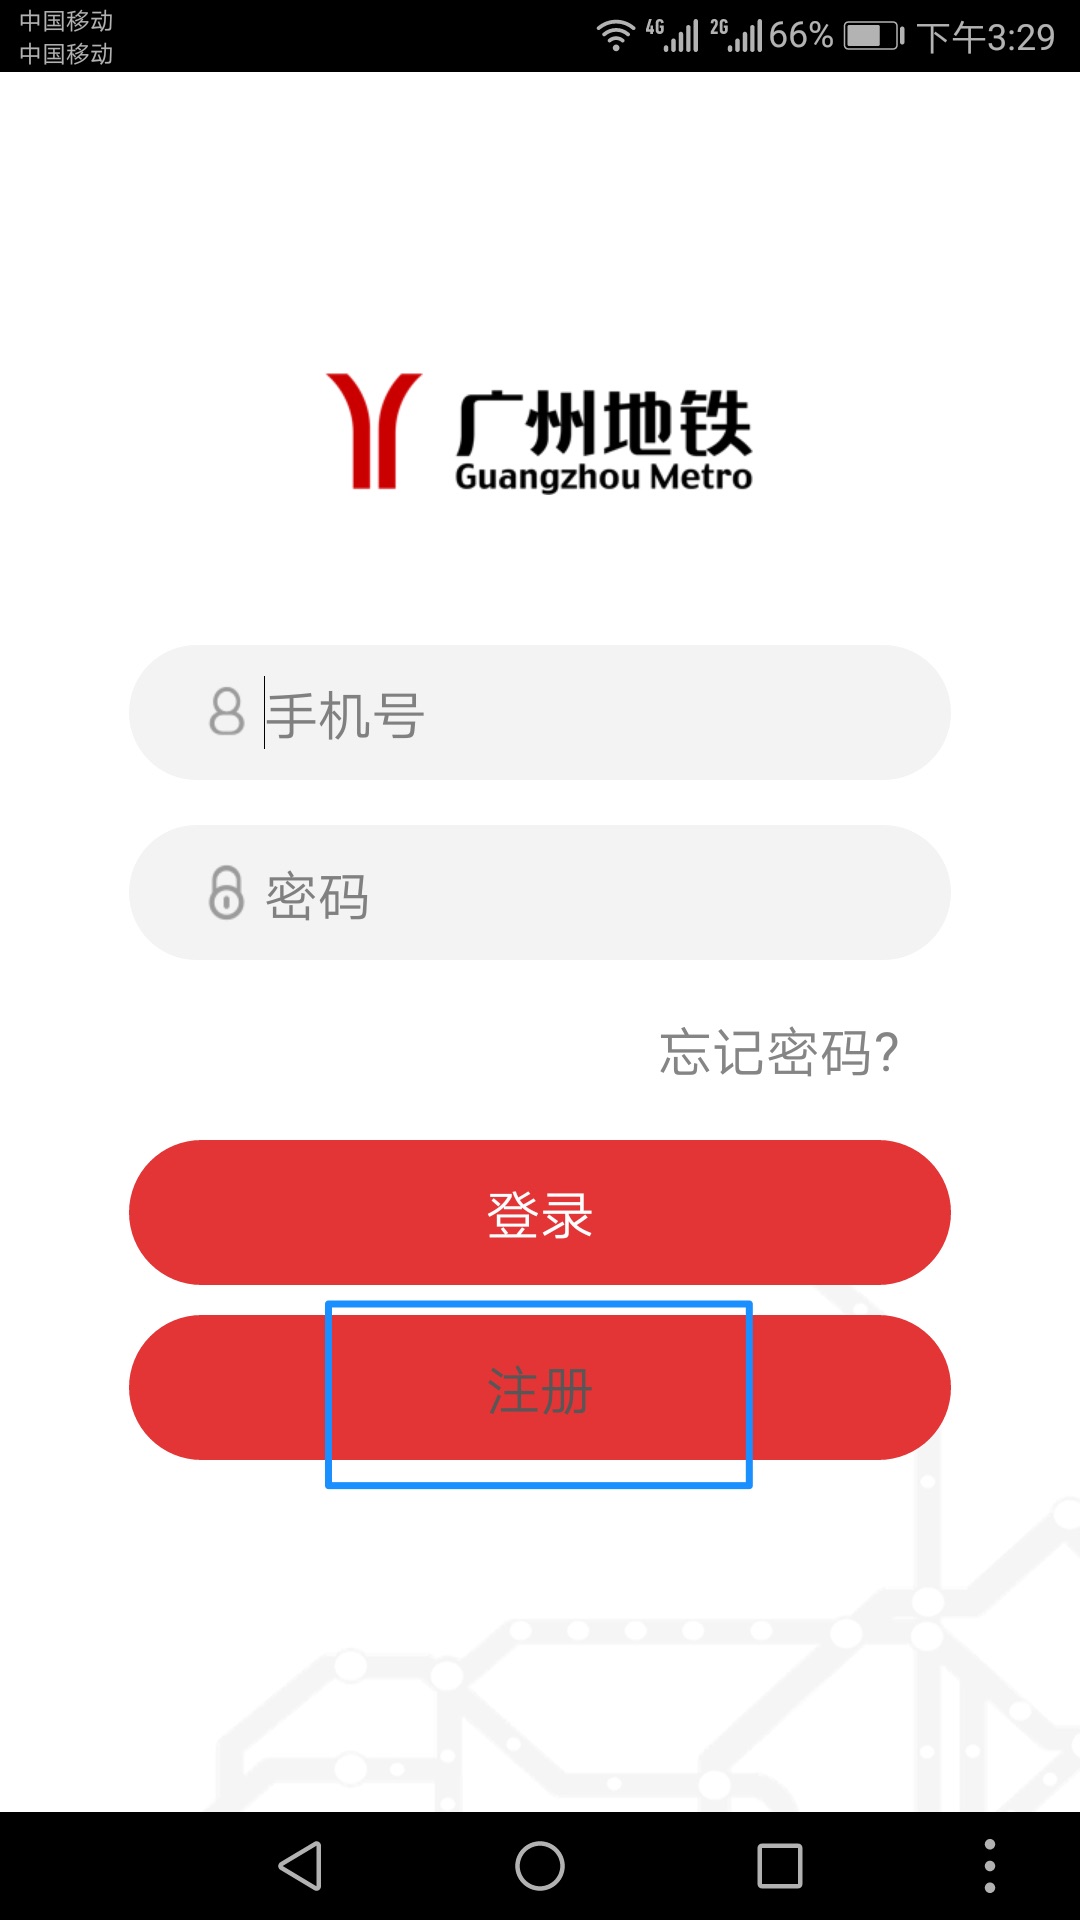 guangzhou-metro-app-1.jpg